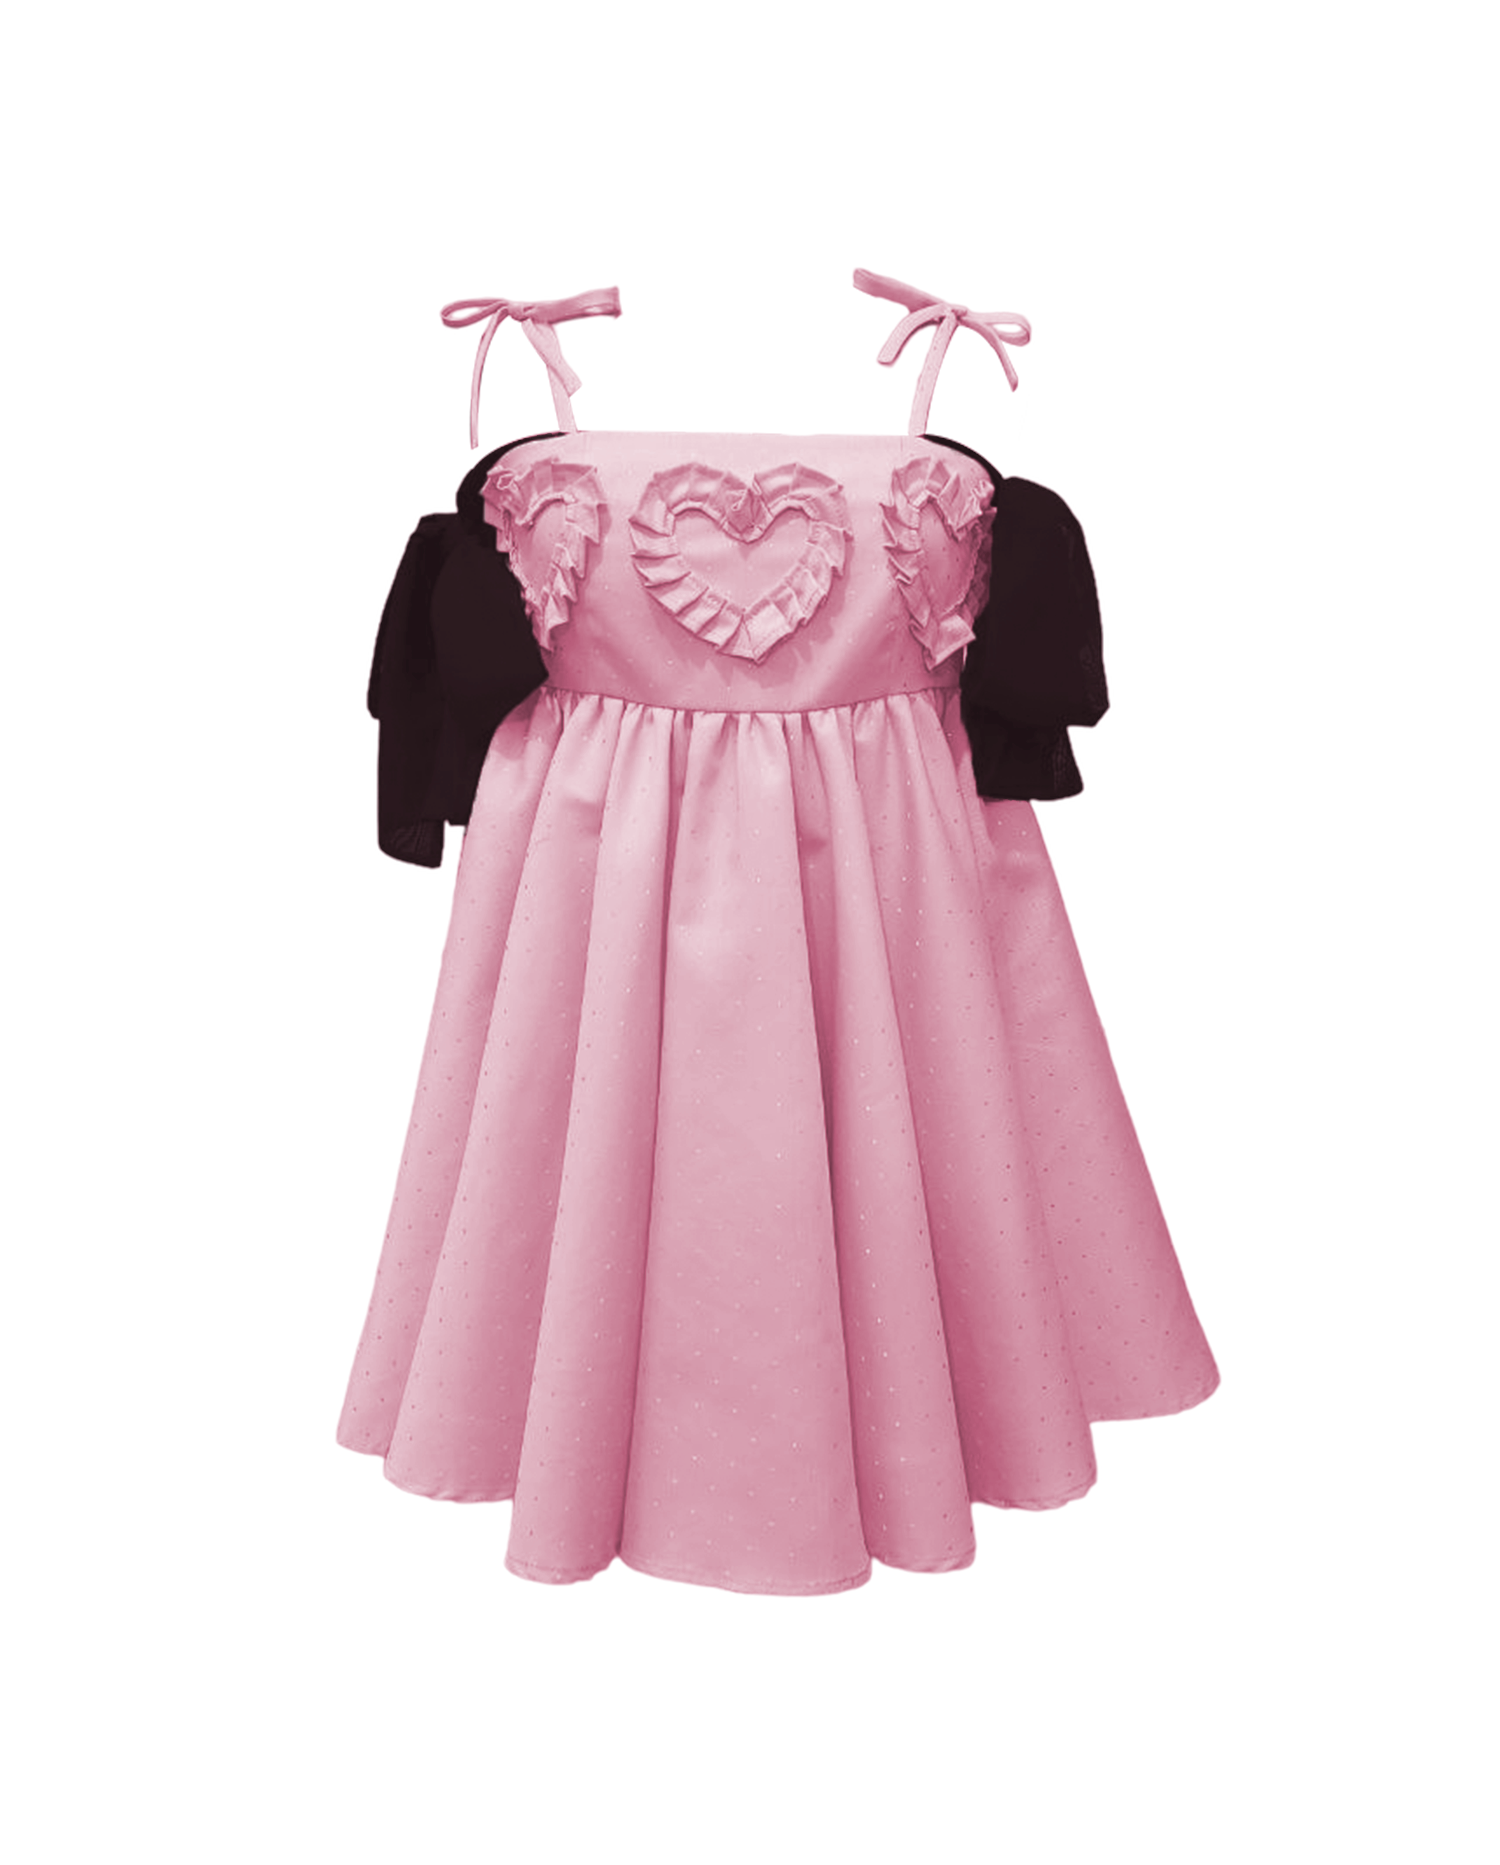 Dâ Emerald Heart Baby Pink Dress